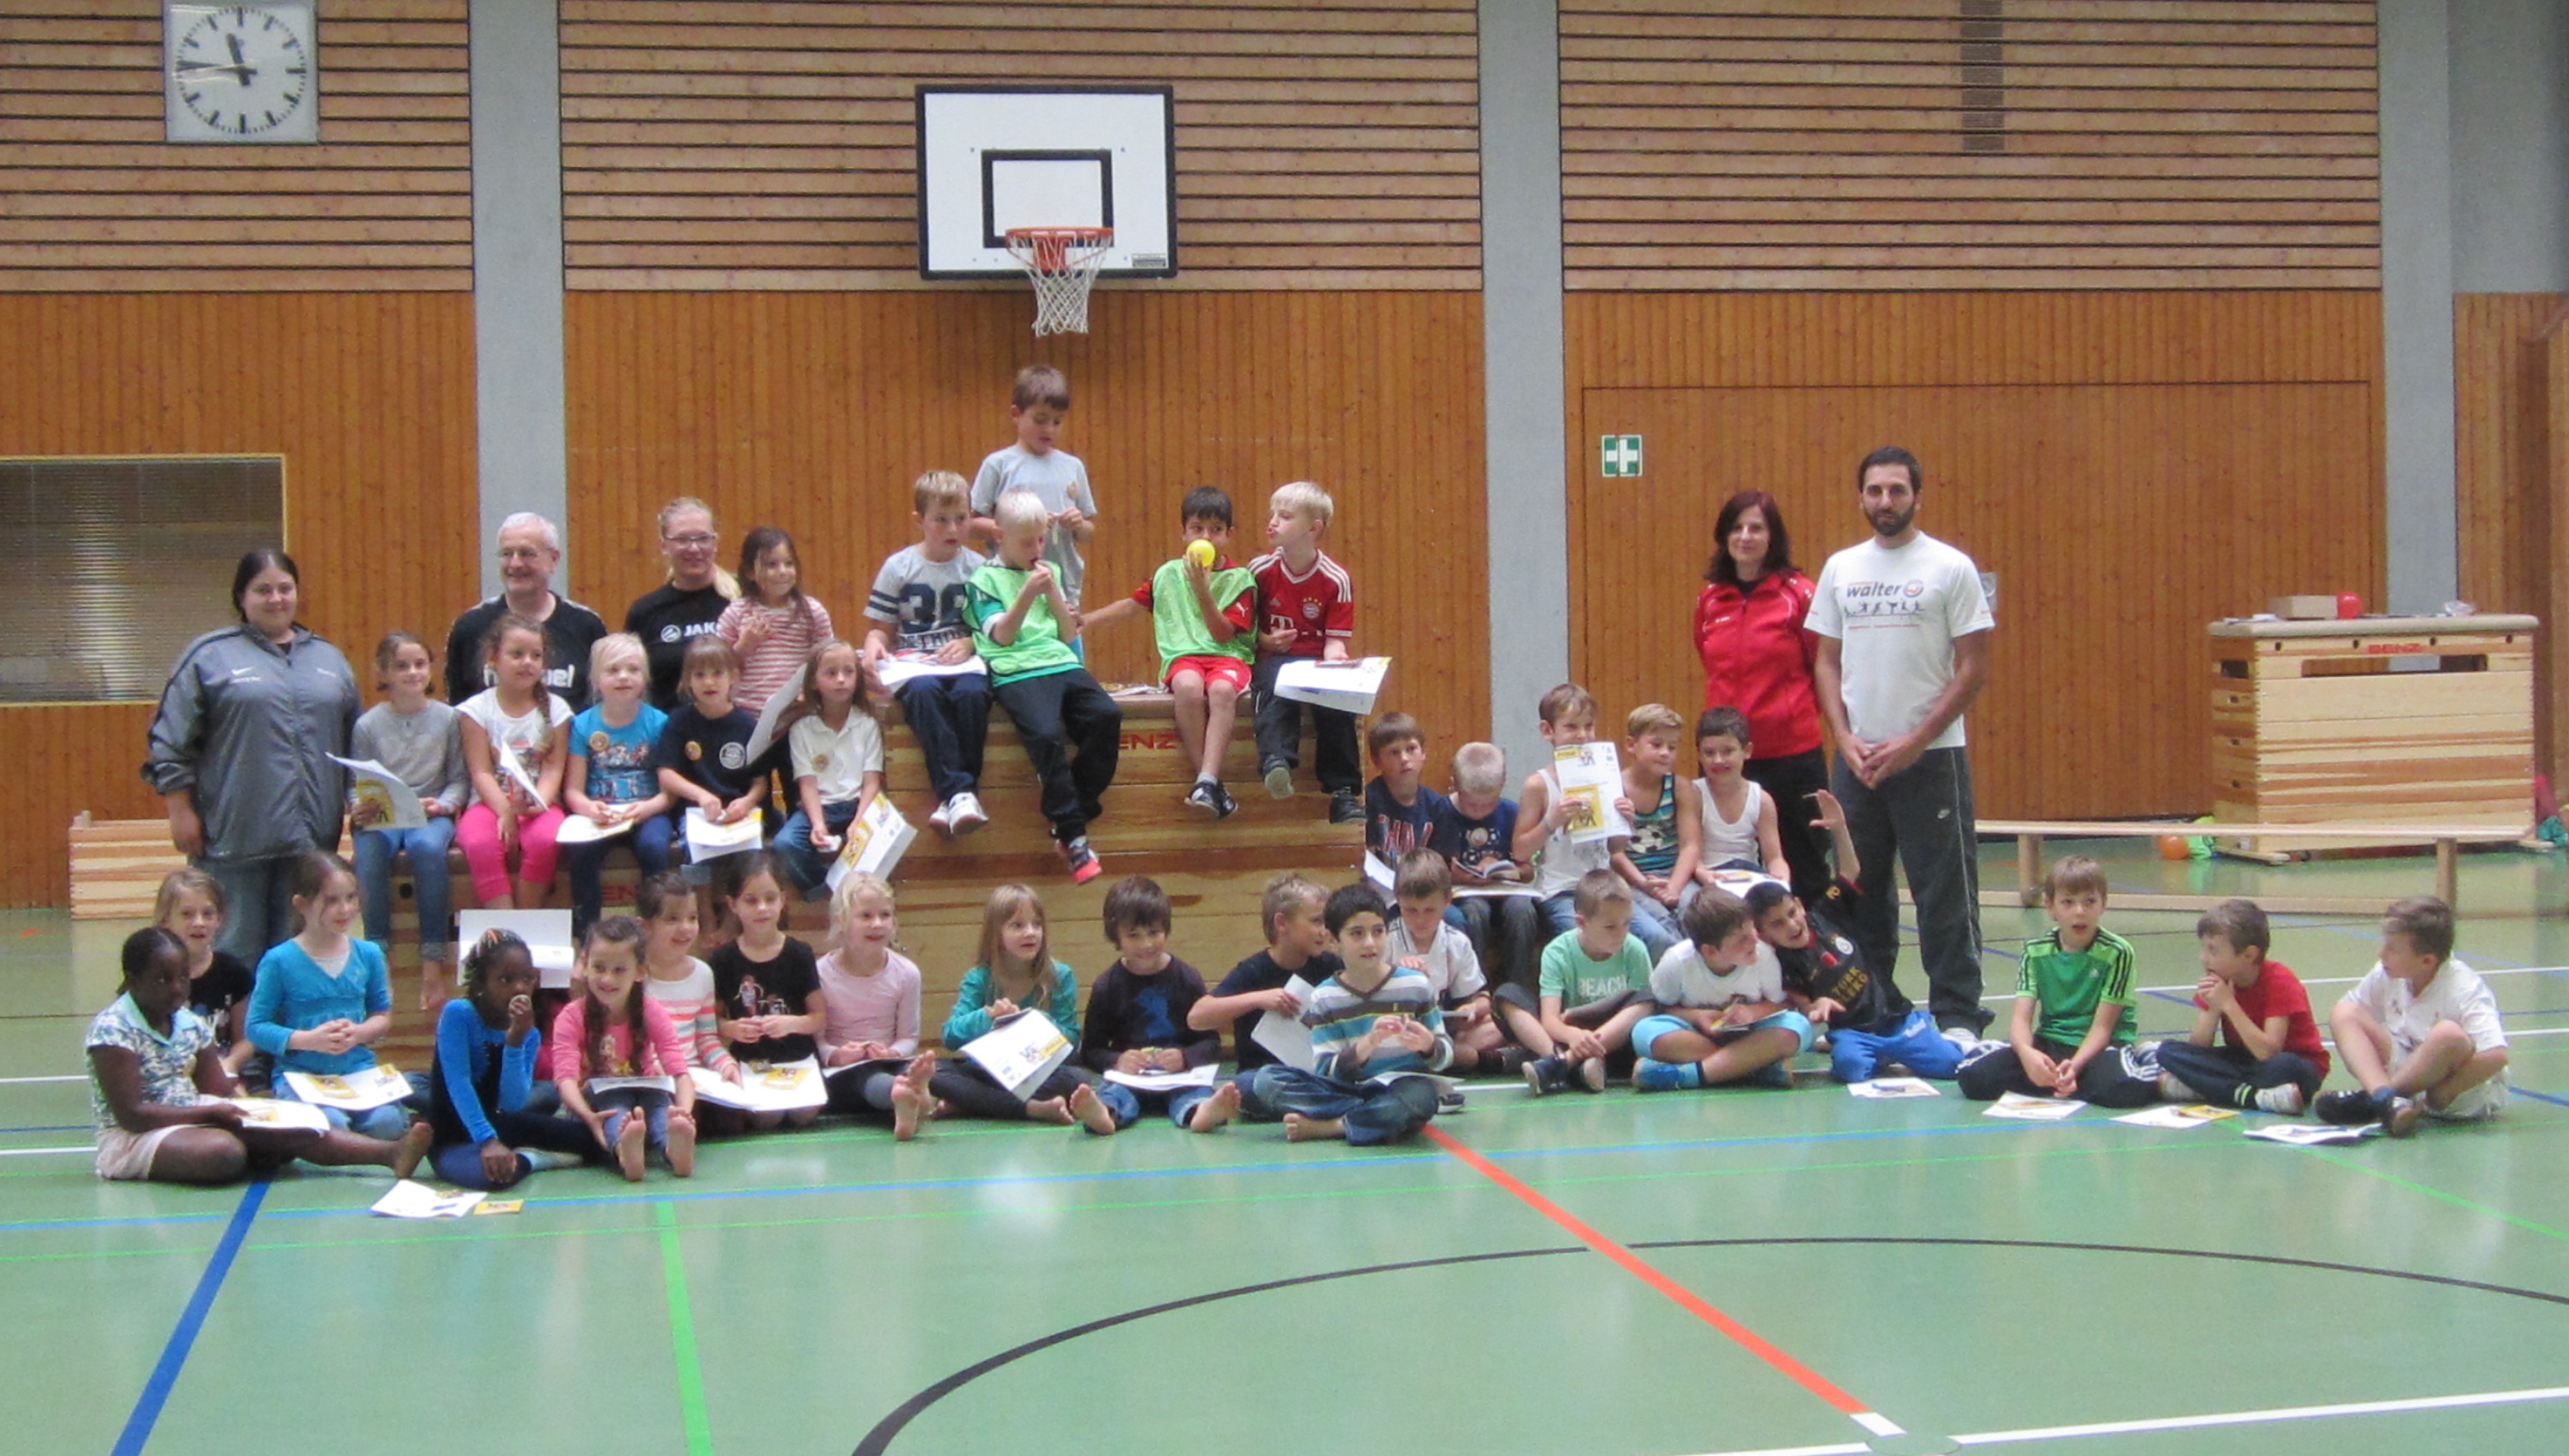 Handballaktionstag der Handballverbände auch in Birkenfeld